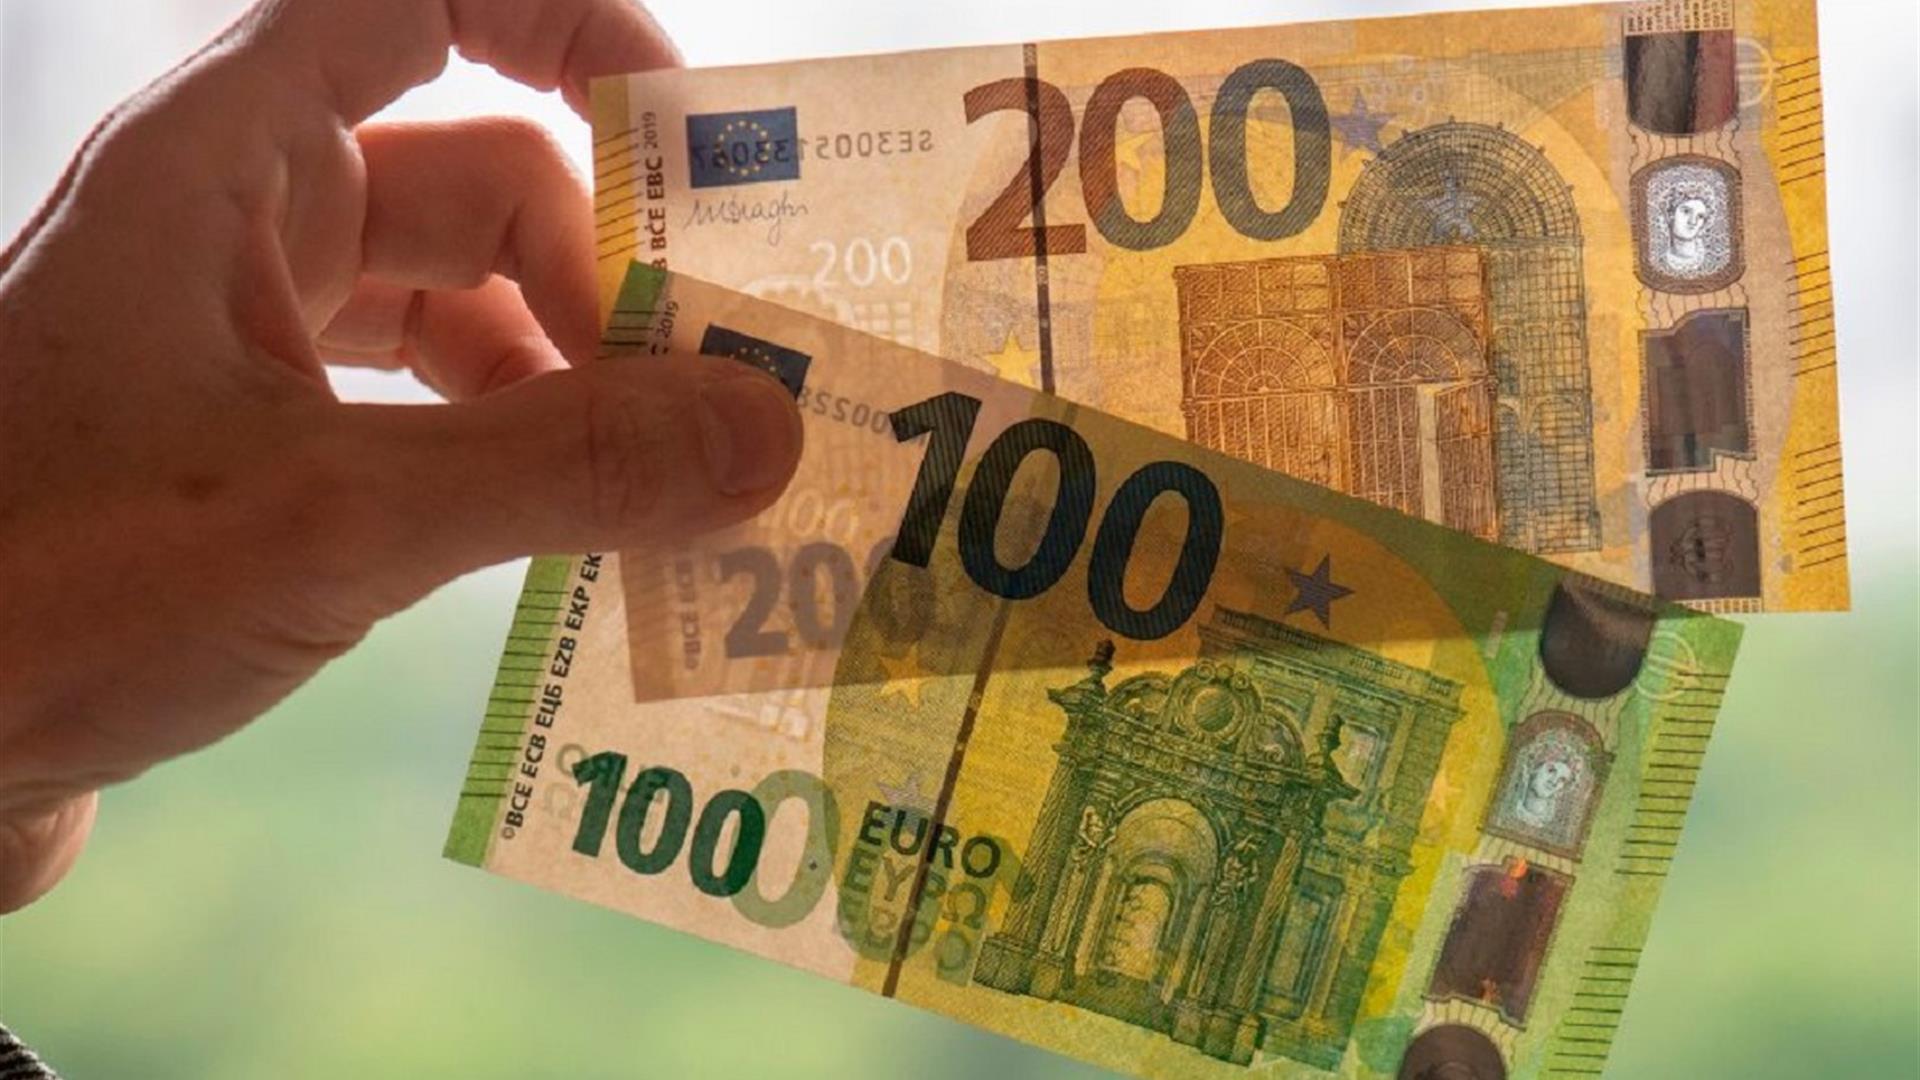 Euro Arrivano Le Nuove Banconote Da 100 E 200 28 05 2019 Vita It